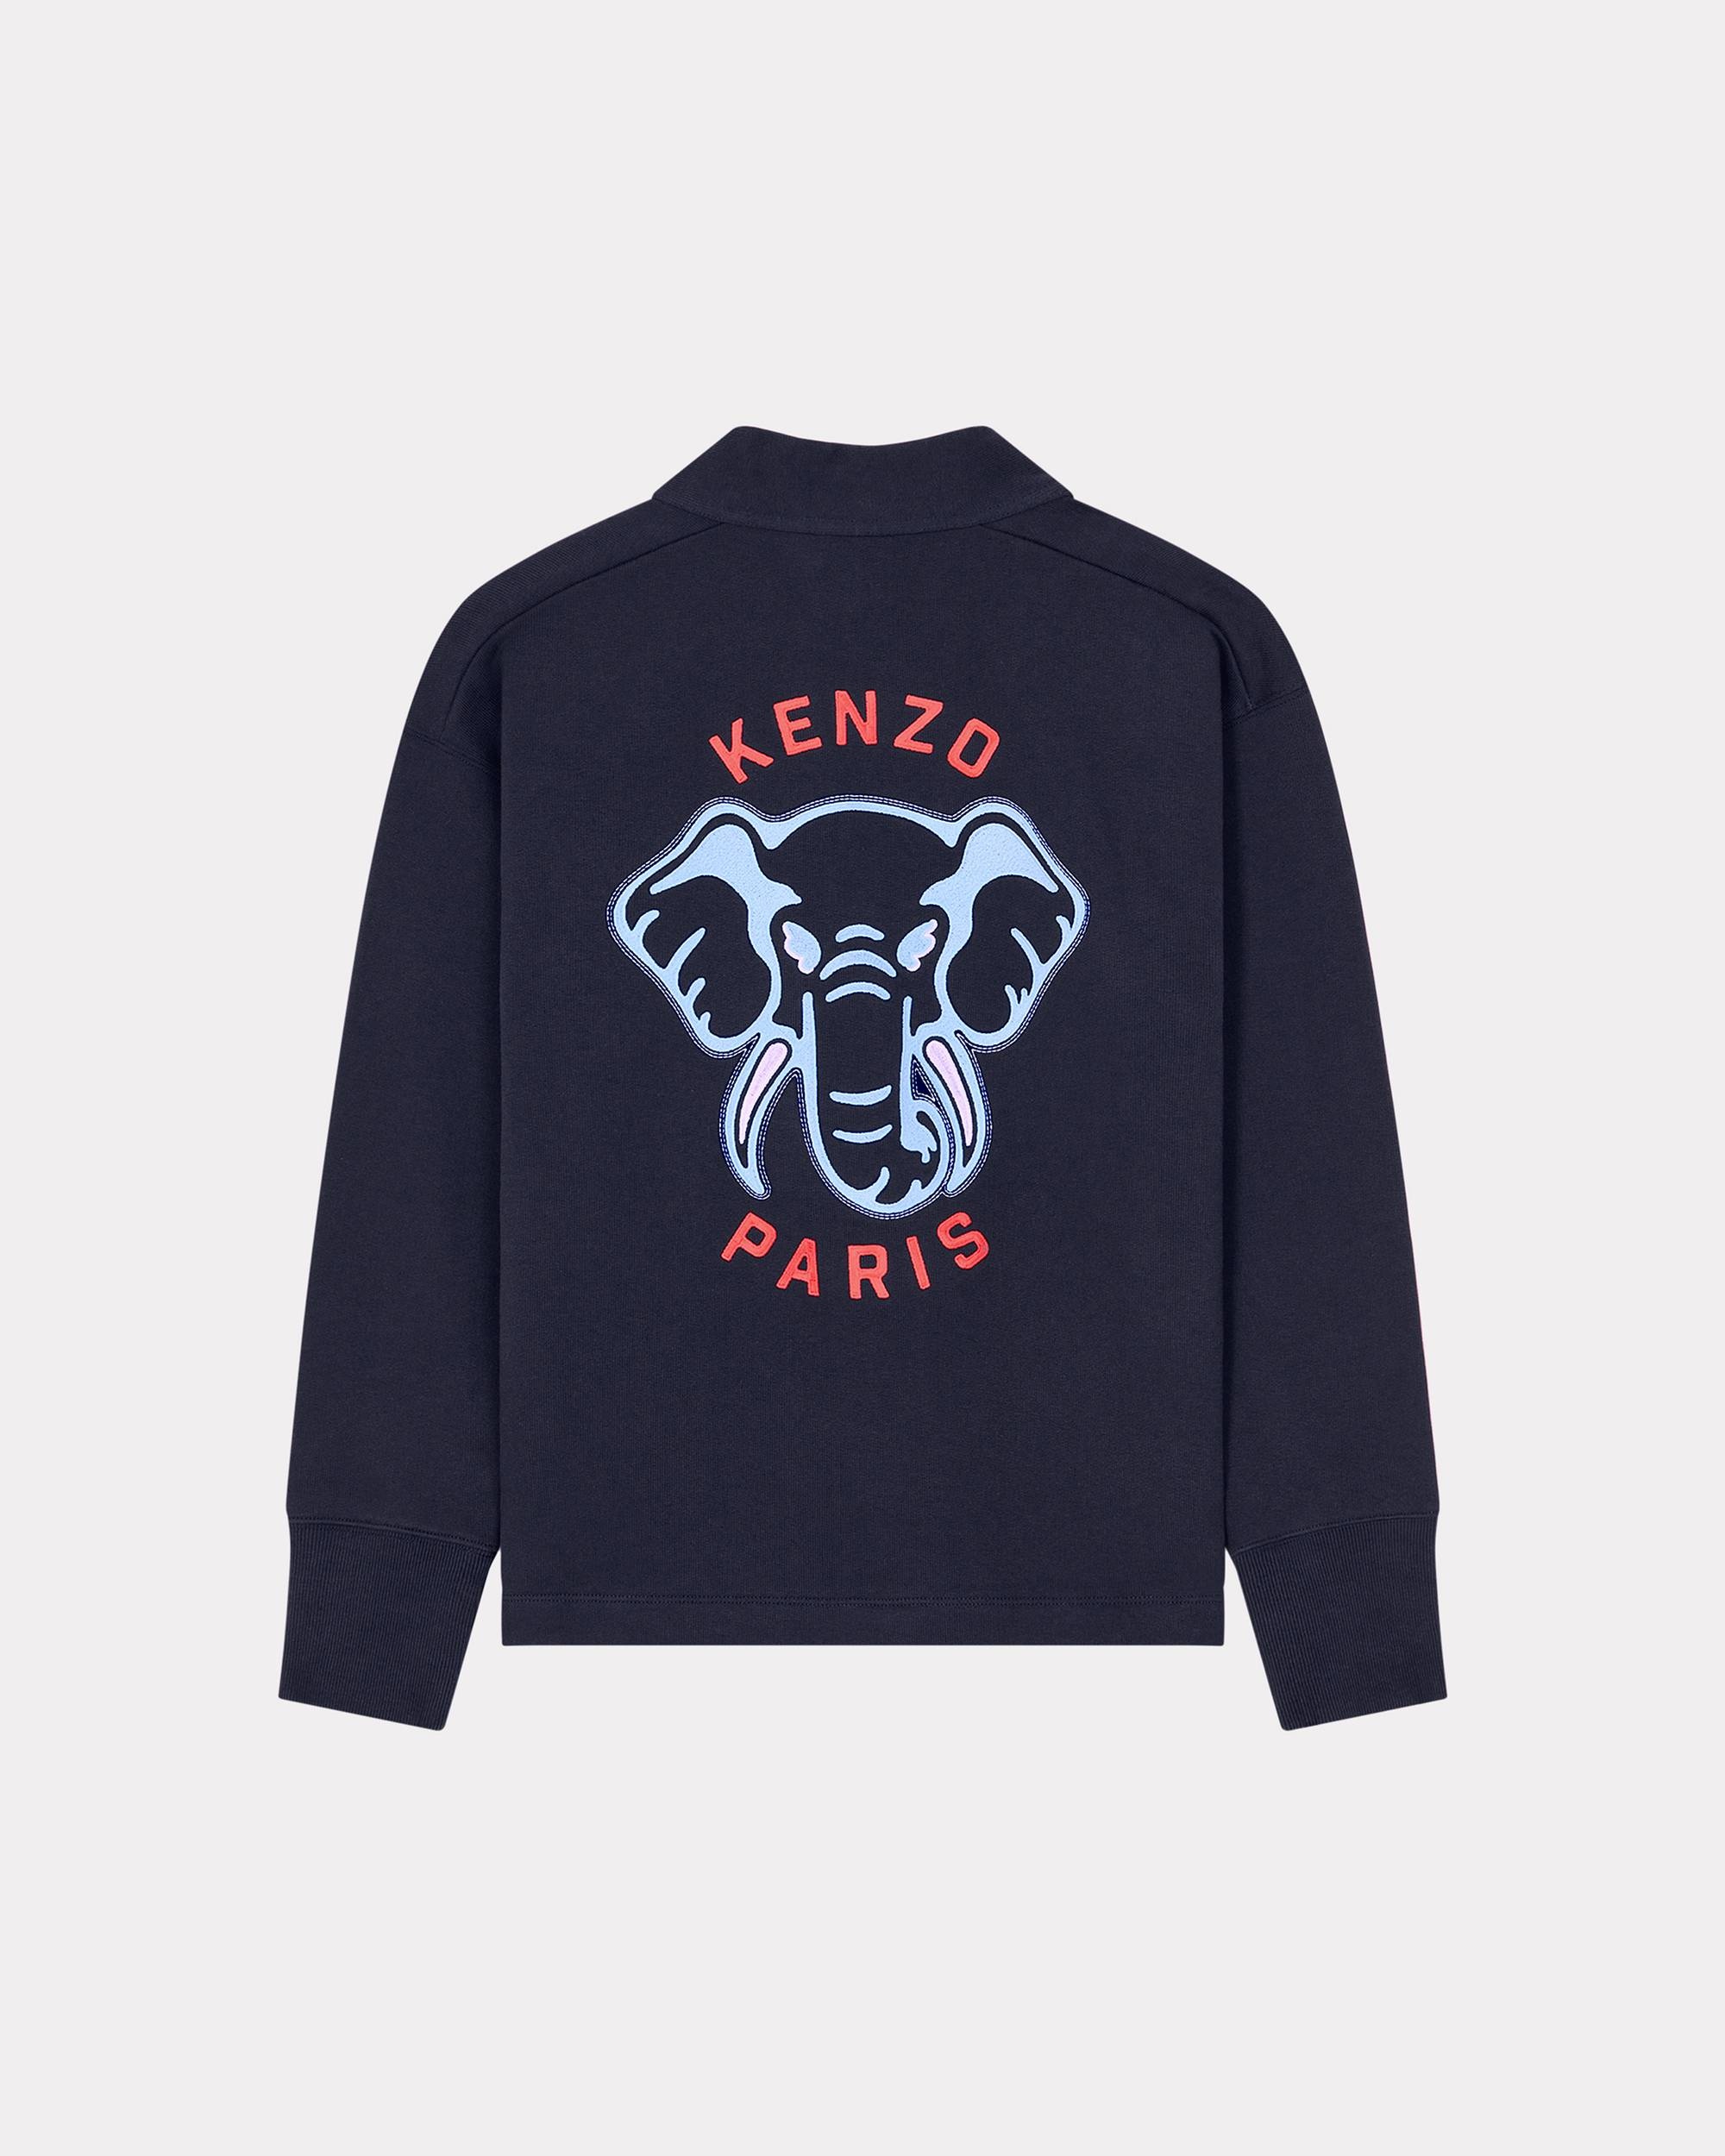 'KENZO Elephant' embroidered sweatshirt cardigan - 2